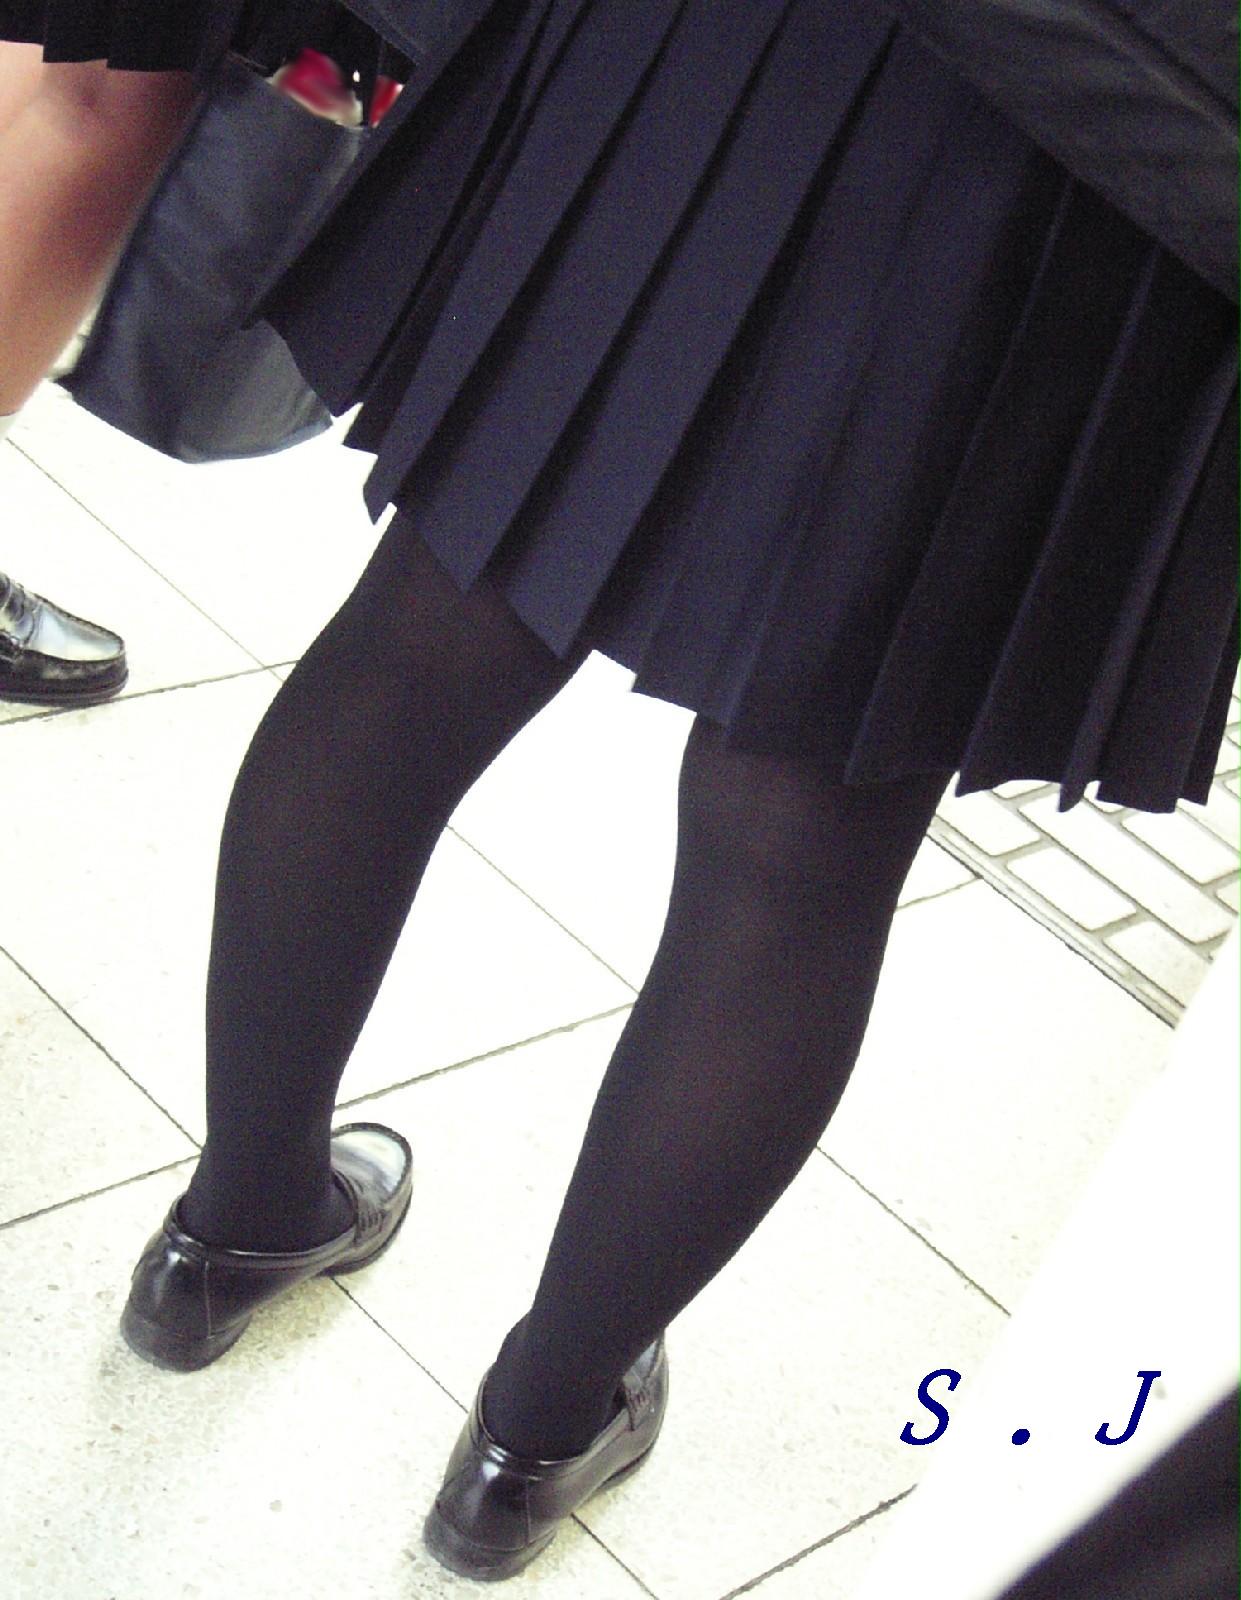 【街撮りJK画像】黒タイツ履いたお嬢様っぽいJKたちの美脚に見とれる画像 14